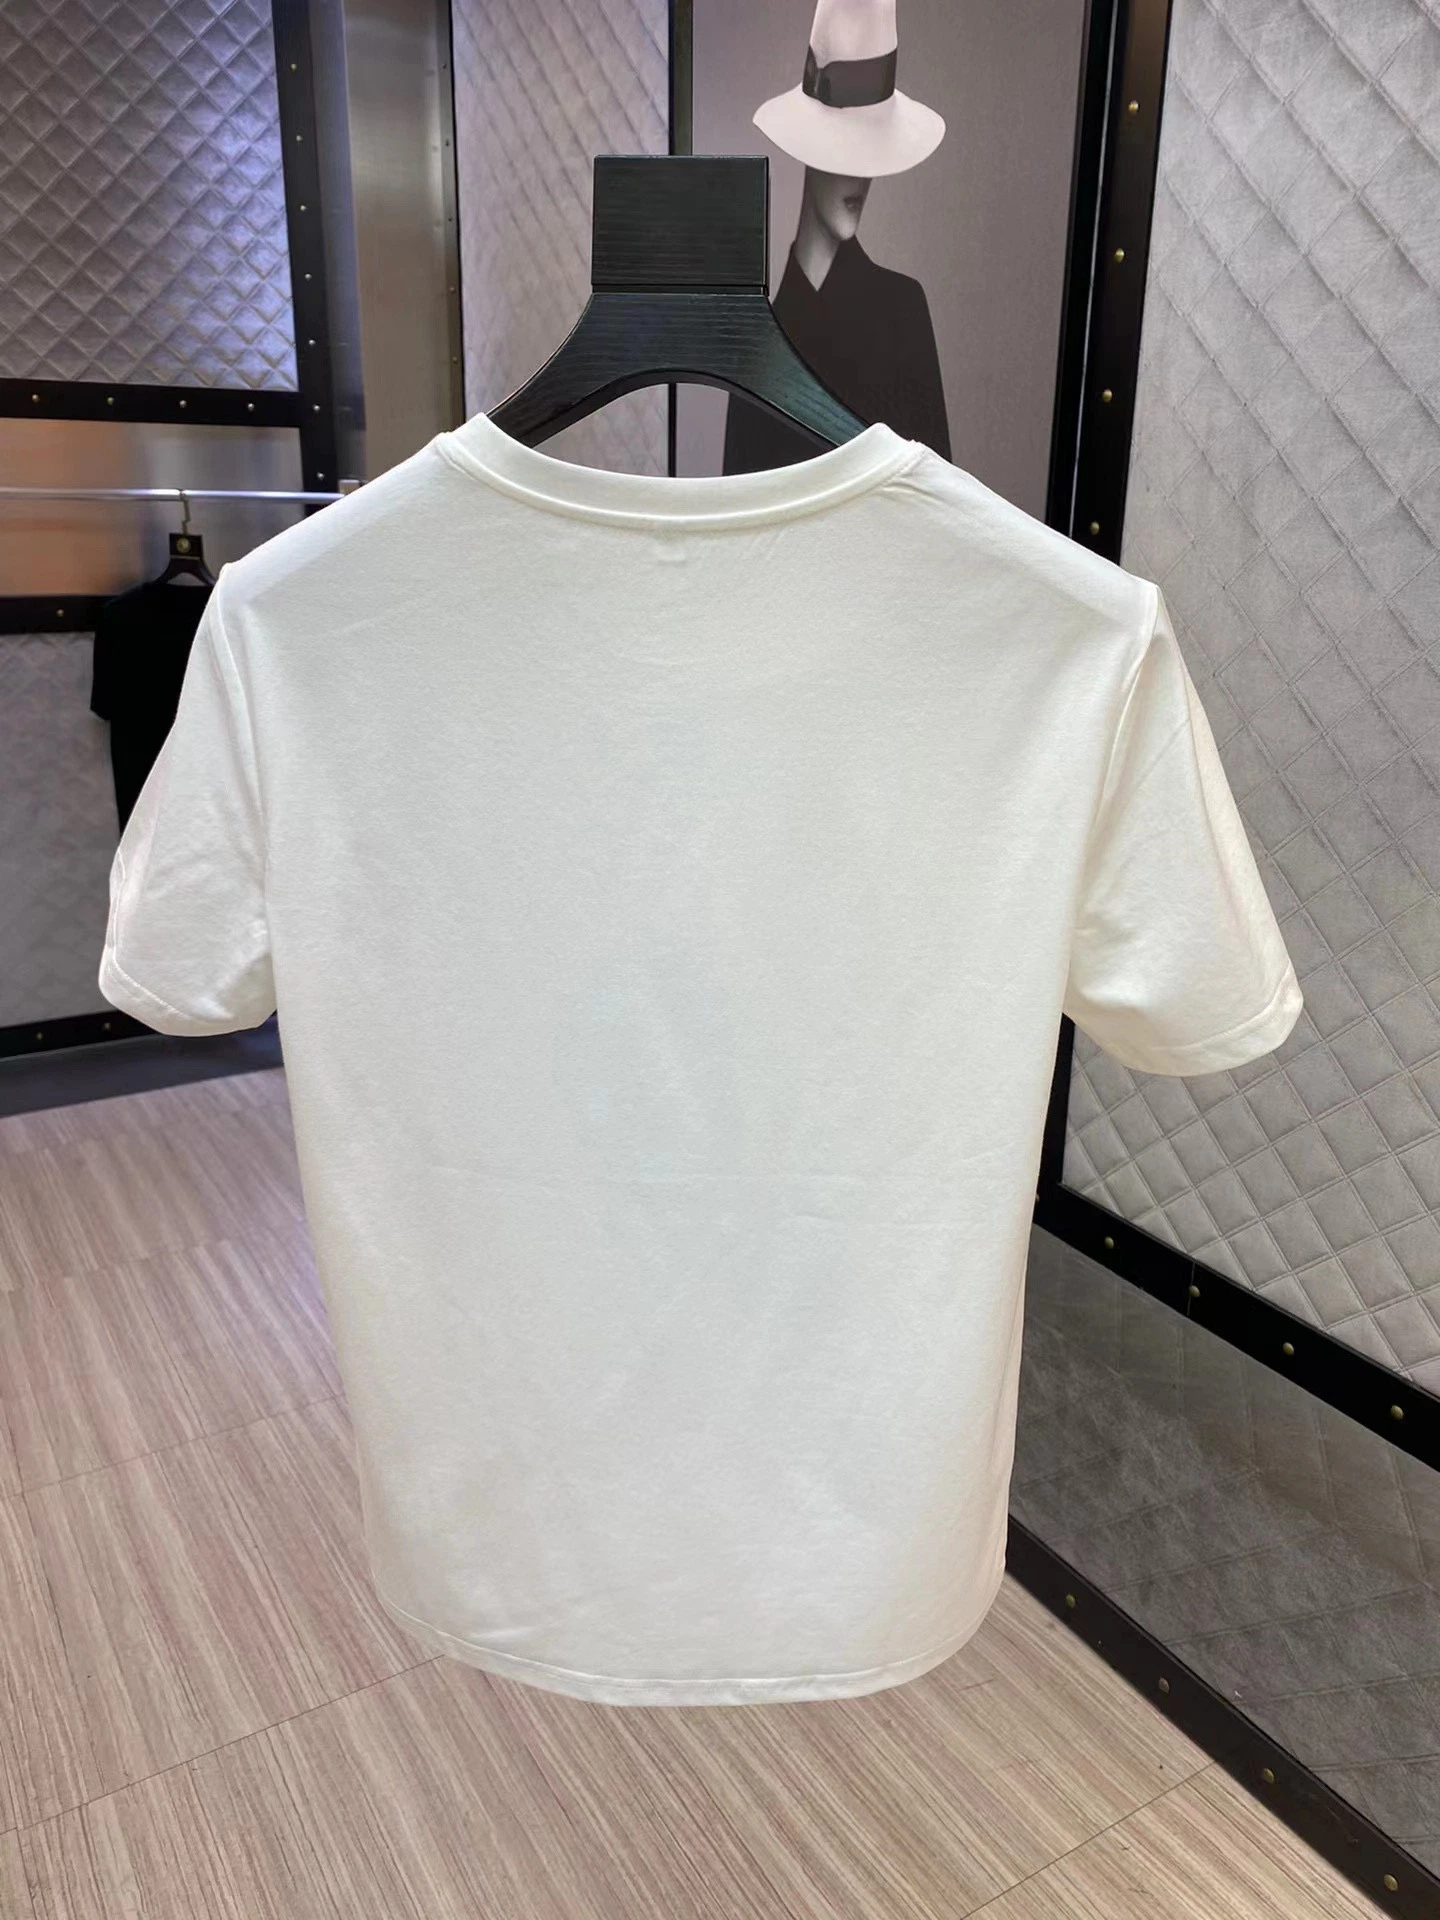 Zonxan Großhandel/Lieferant Herren′ S T-Shirts Designer T-Shirts 100% Bio-Baumwolle T-Shirts Nachhaltige T-Shirts Bio-Baumwolle Herren′ S Baumwolle T-Shirts